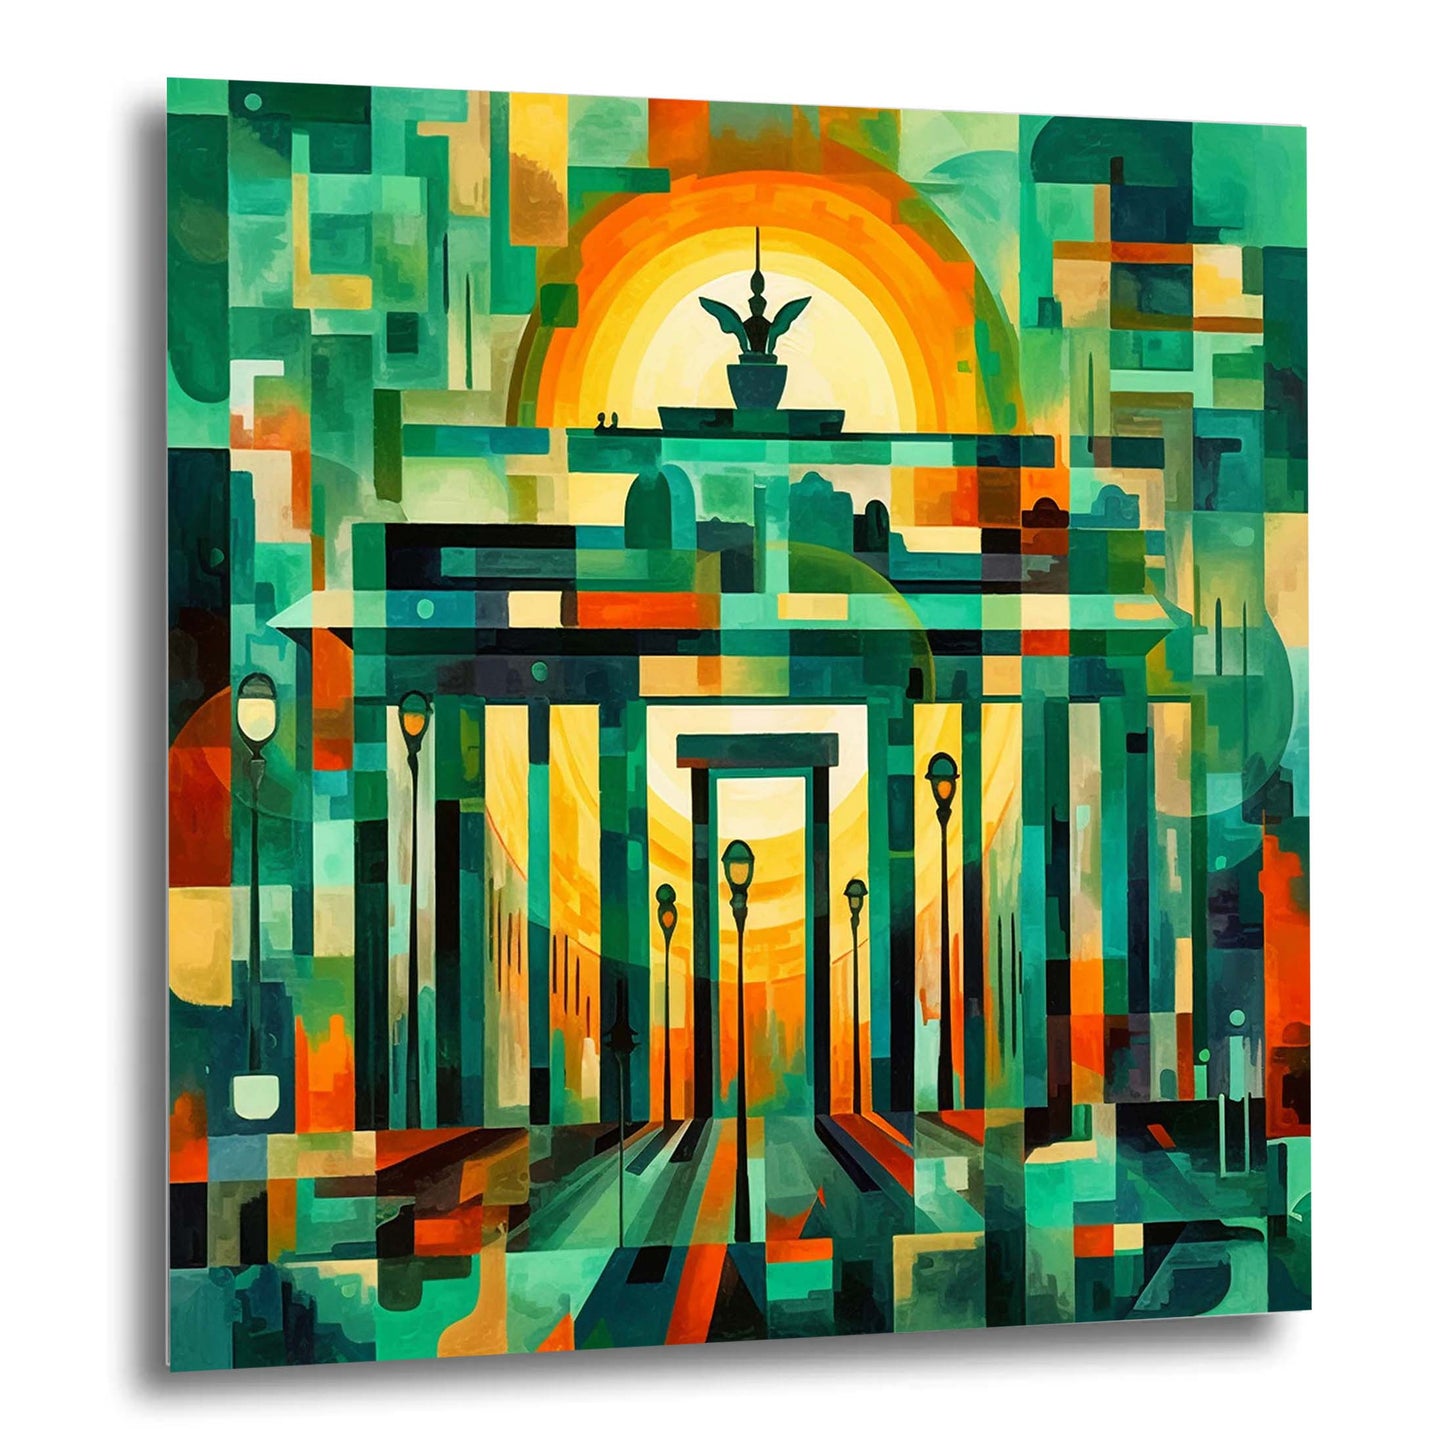 Berlin Brandenburger Tor - Wandbild in der Stilrichtung des Futurismus